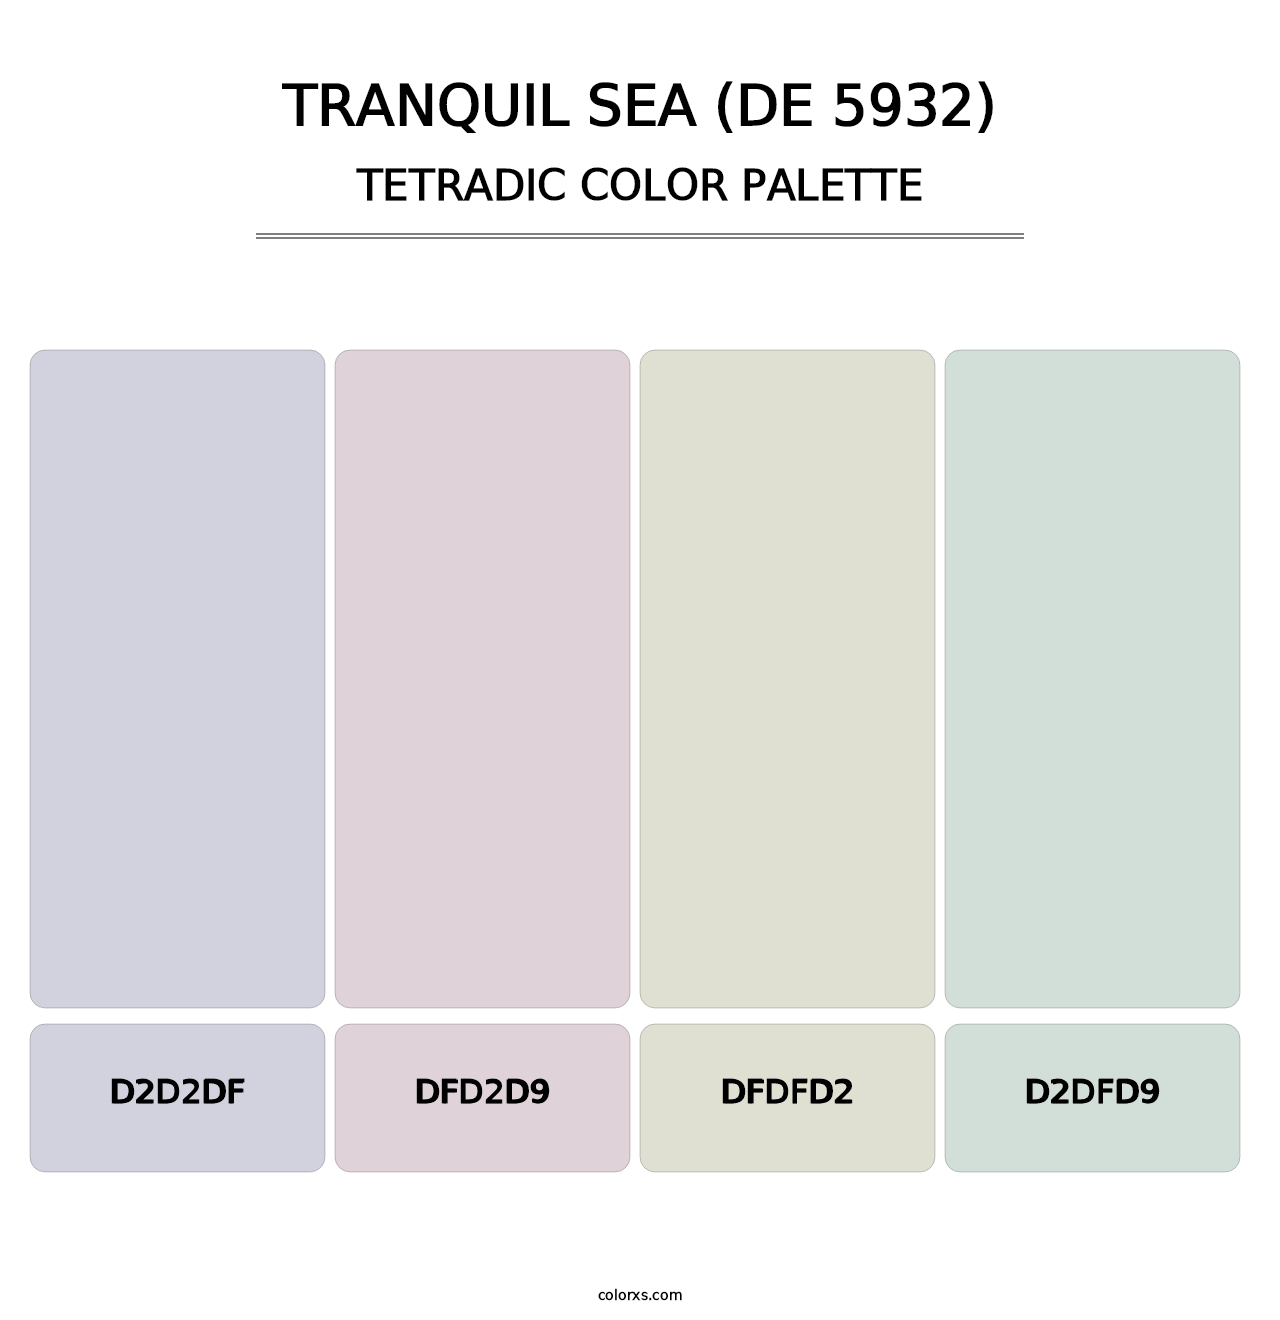 Tranquil Sea (DE 5932) - Tetradic Color Palette